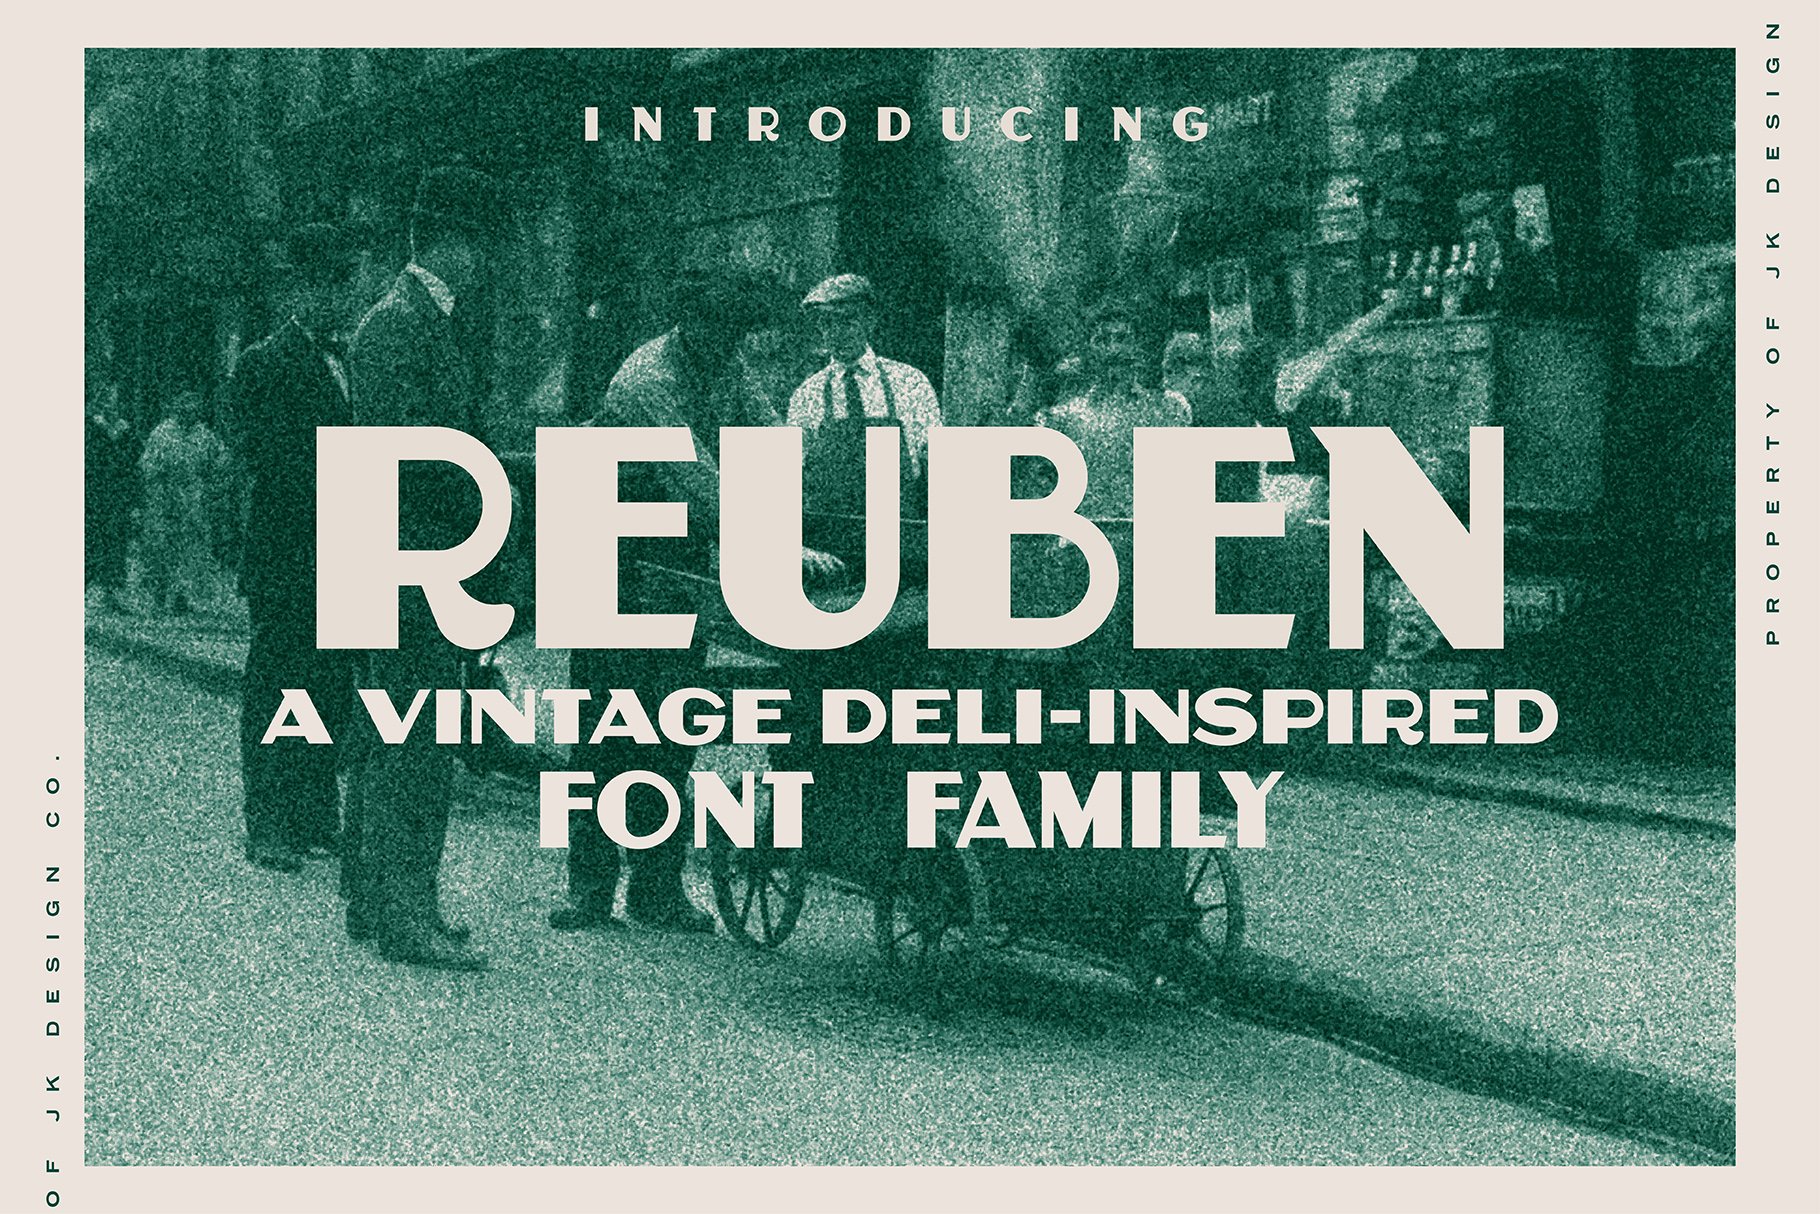 Reuben - A Vintage Display Font cover image.